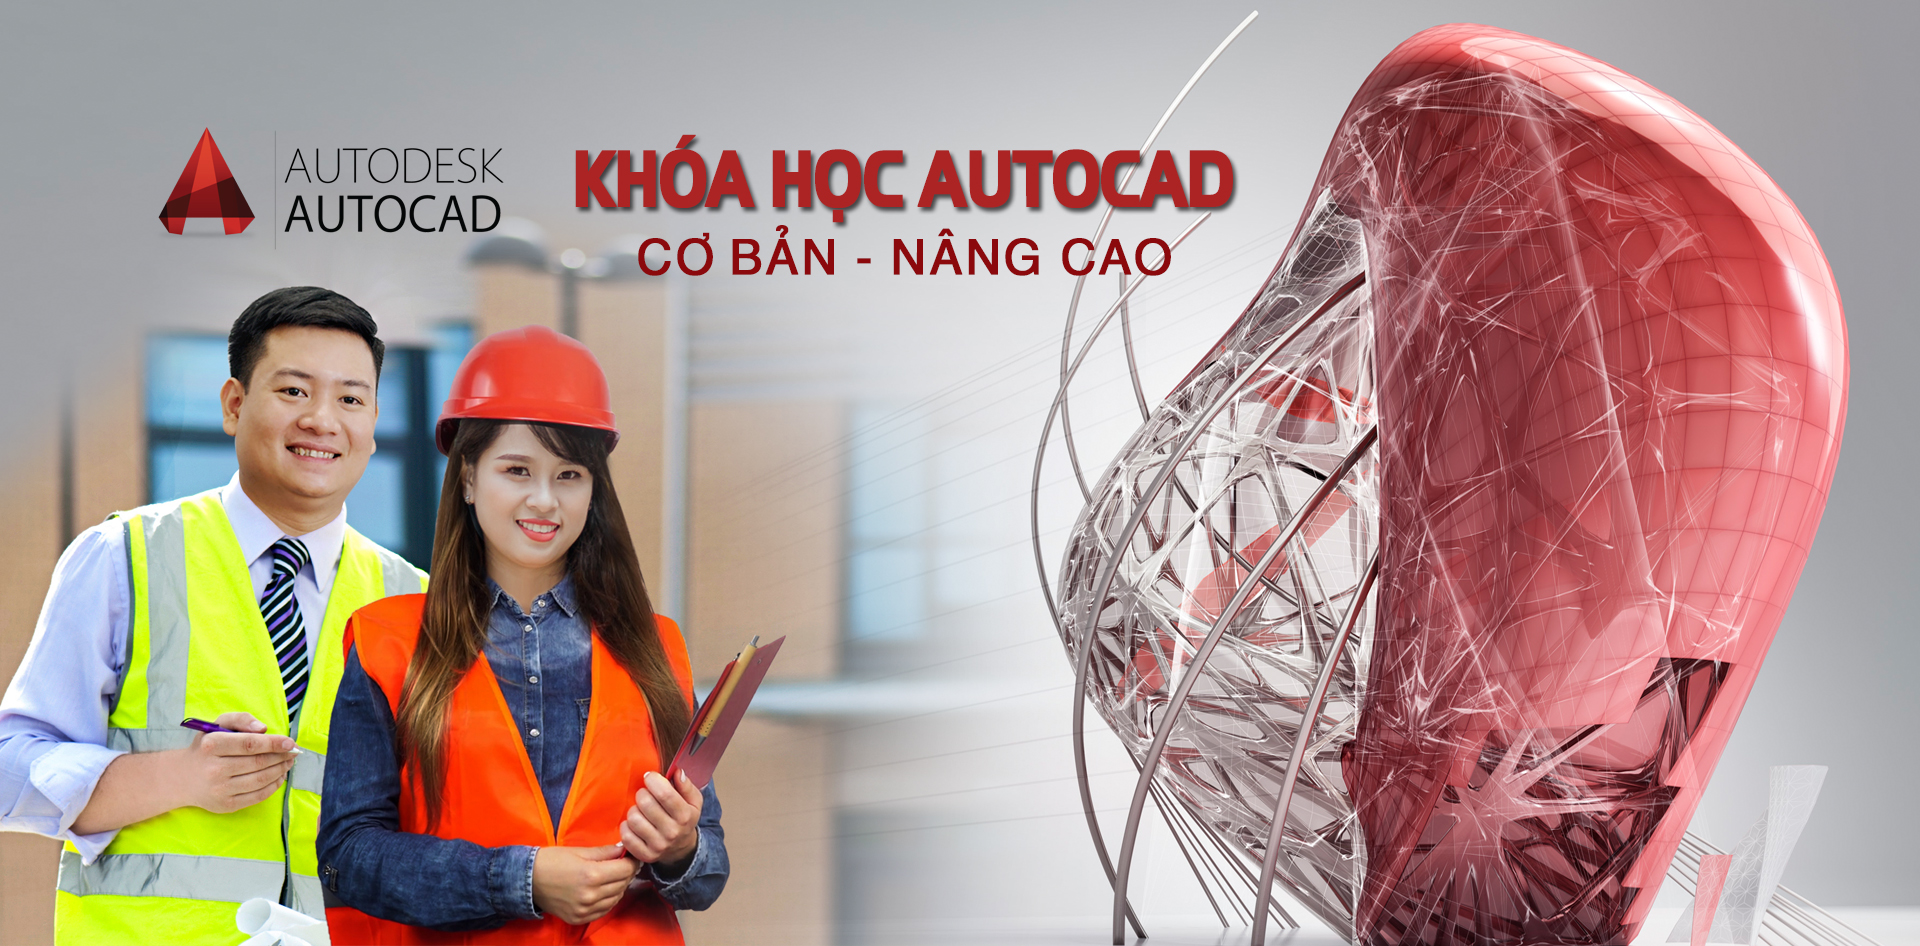 Khóa học Autocad tại Nam Từ Liêm - Hà Nội